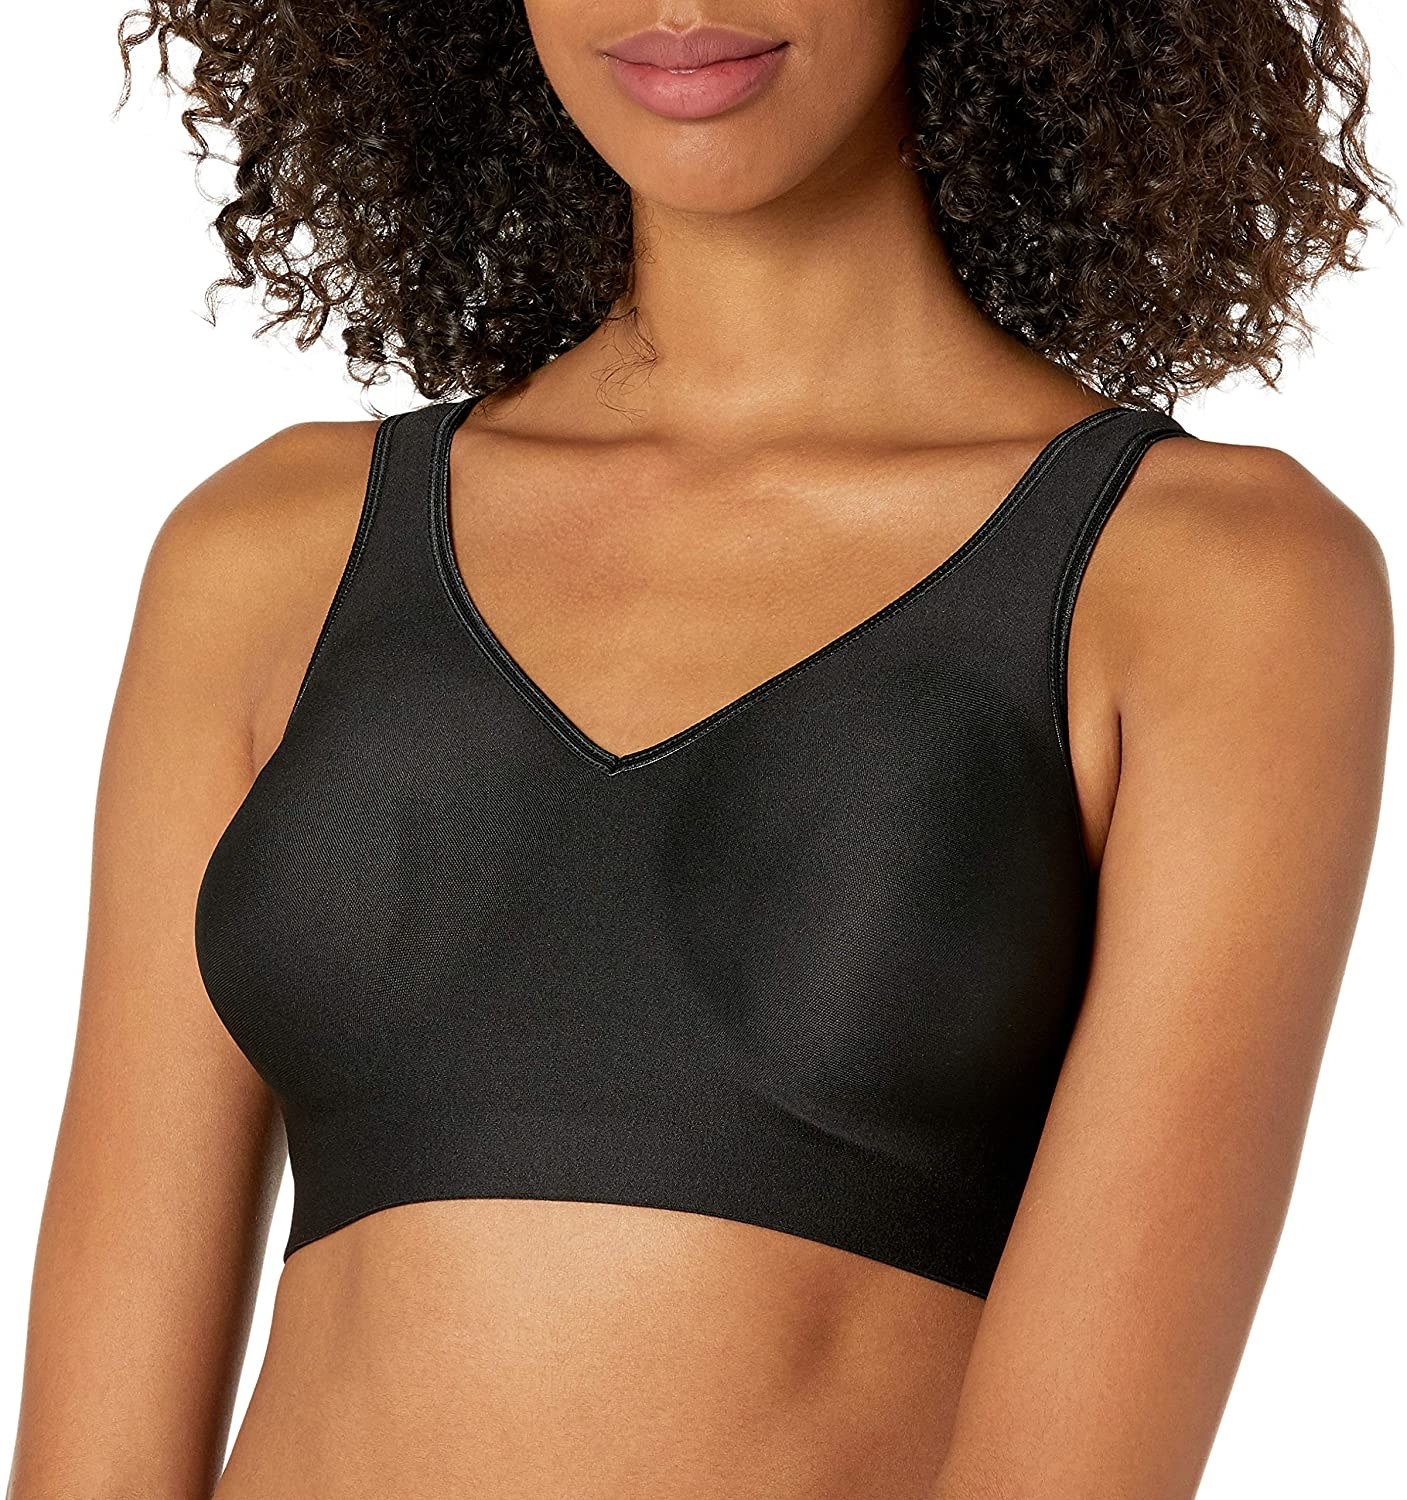 Model wearing the wireless bra in black